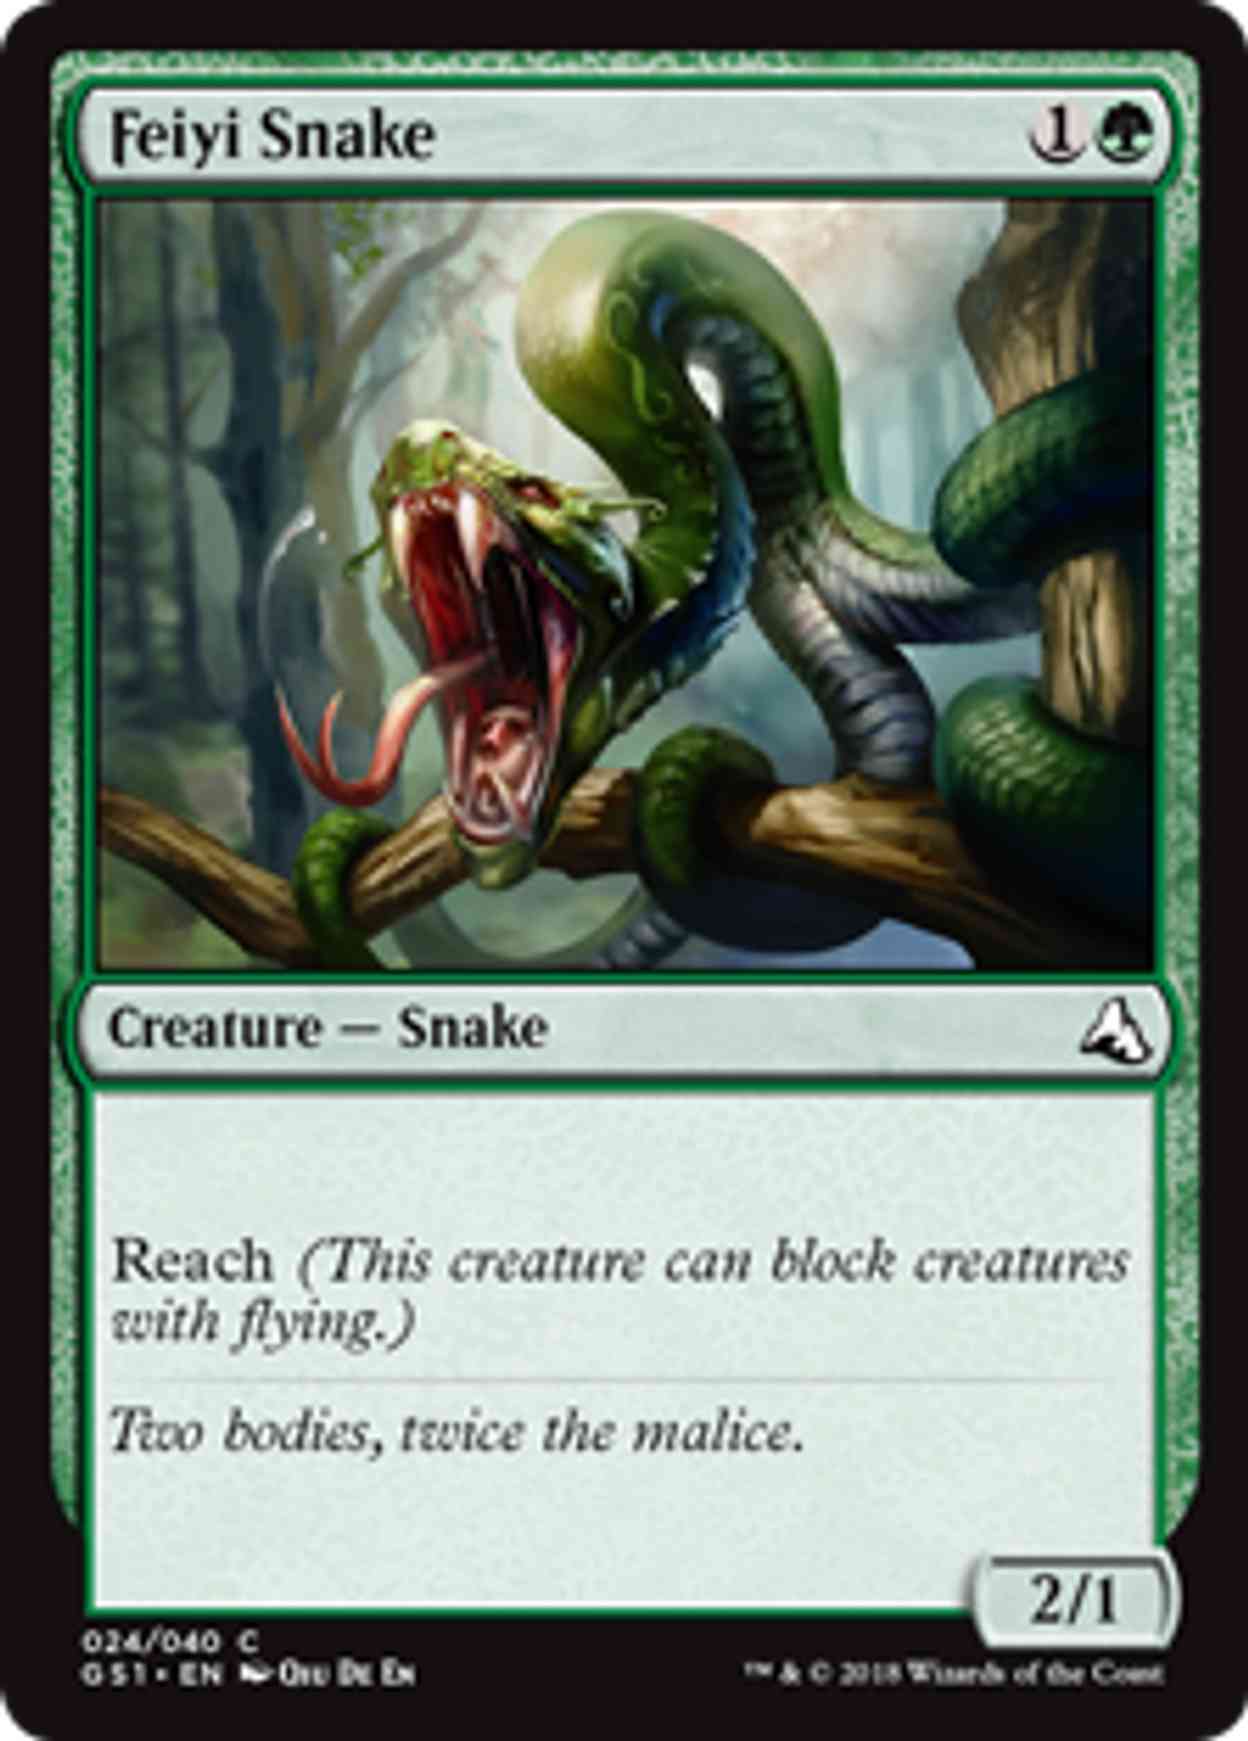 Feiyi Snake magic card front